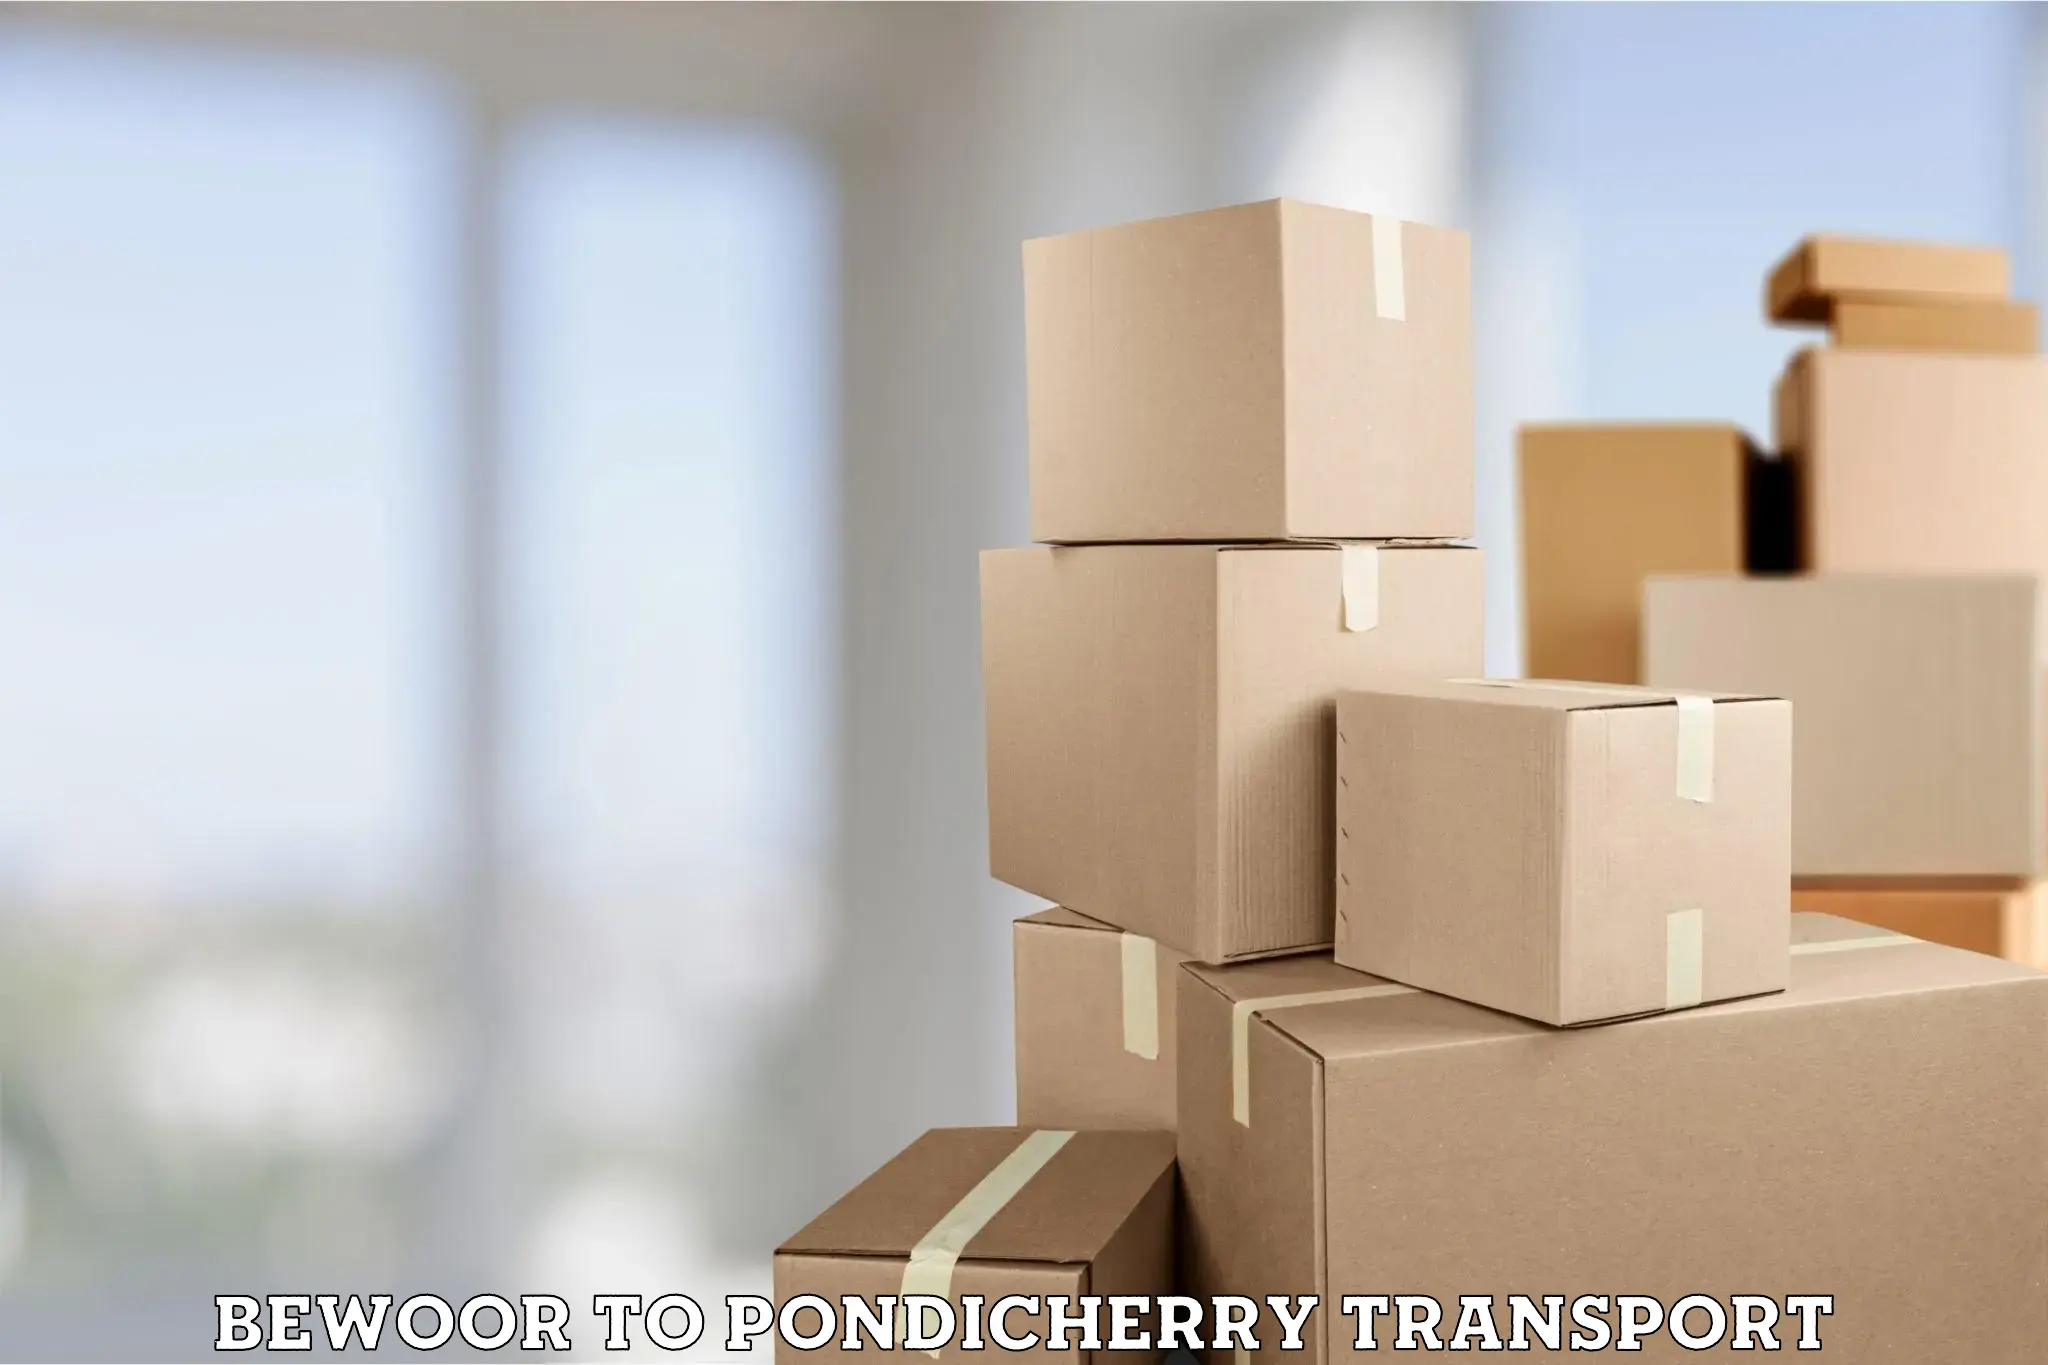 Furniture transport service Bewoor to Pondicherry